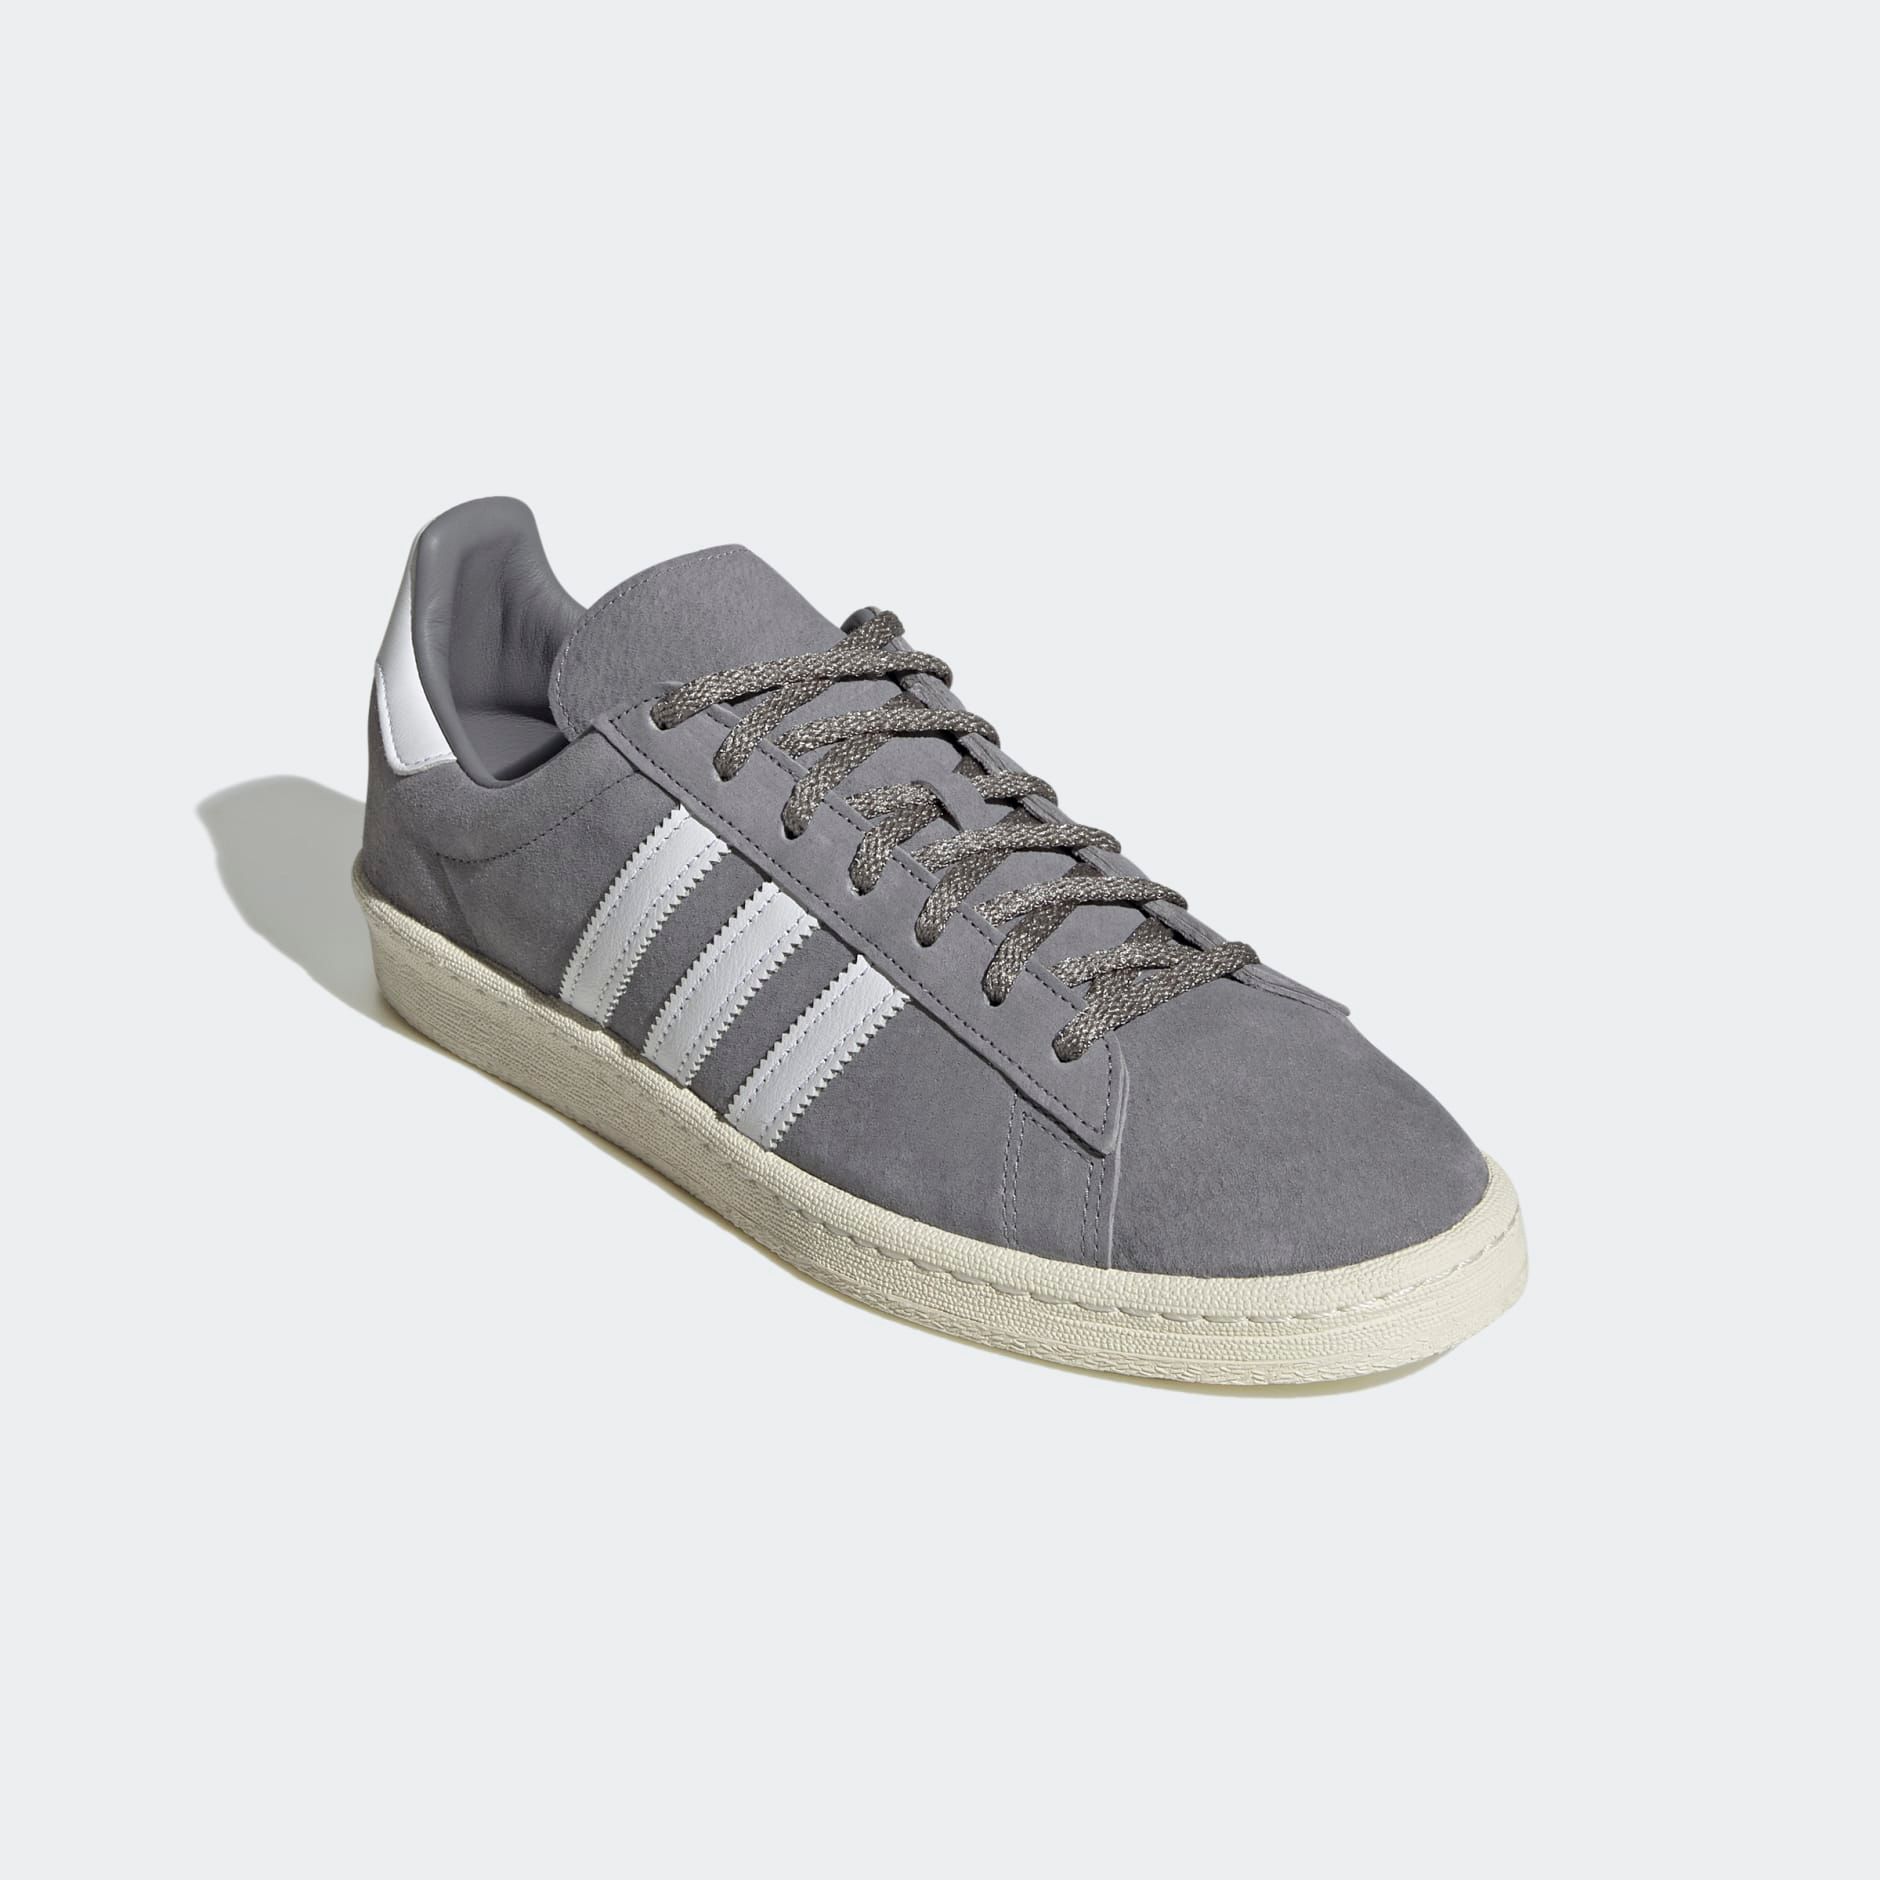  adidas Campus 80s - Grey 